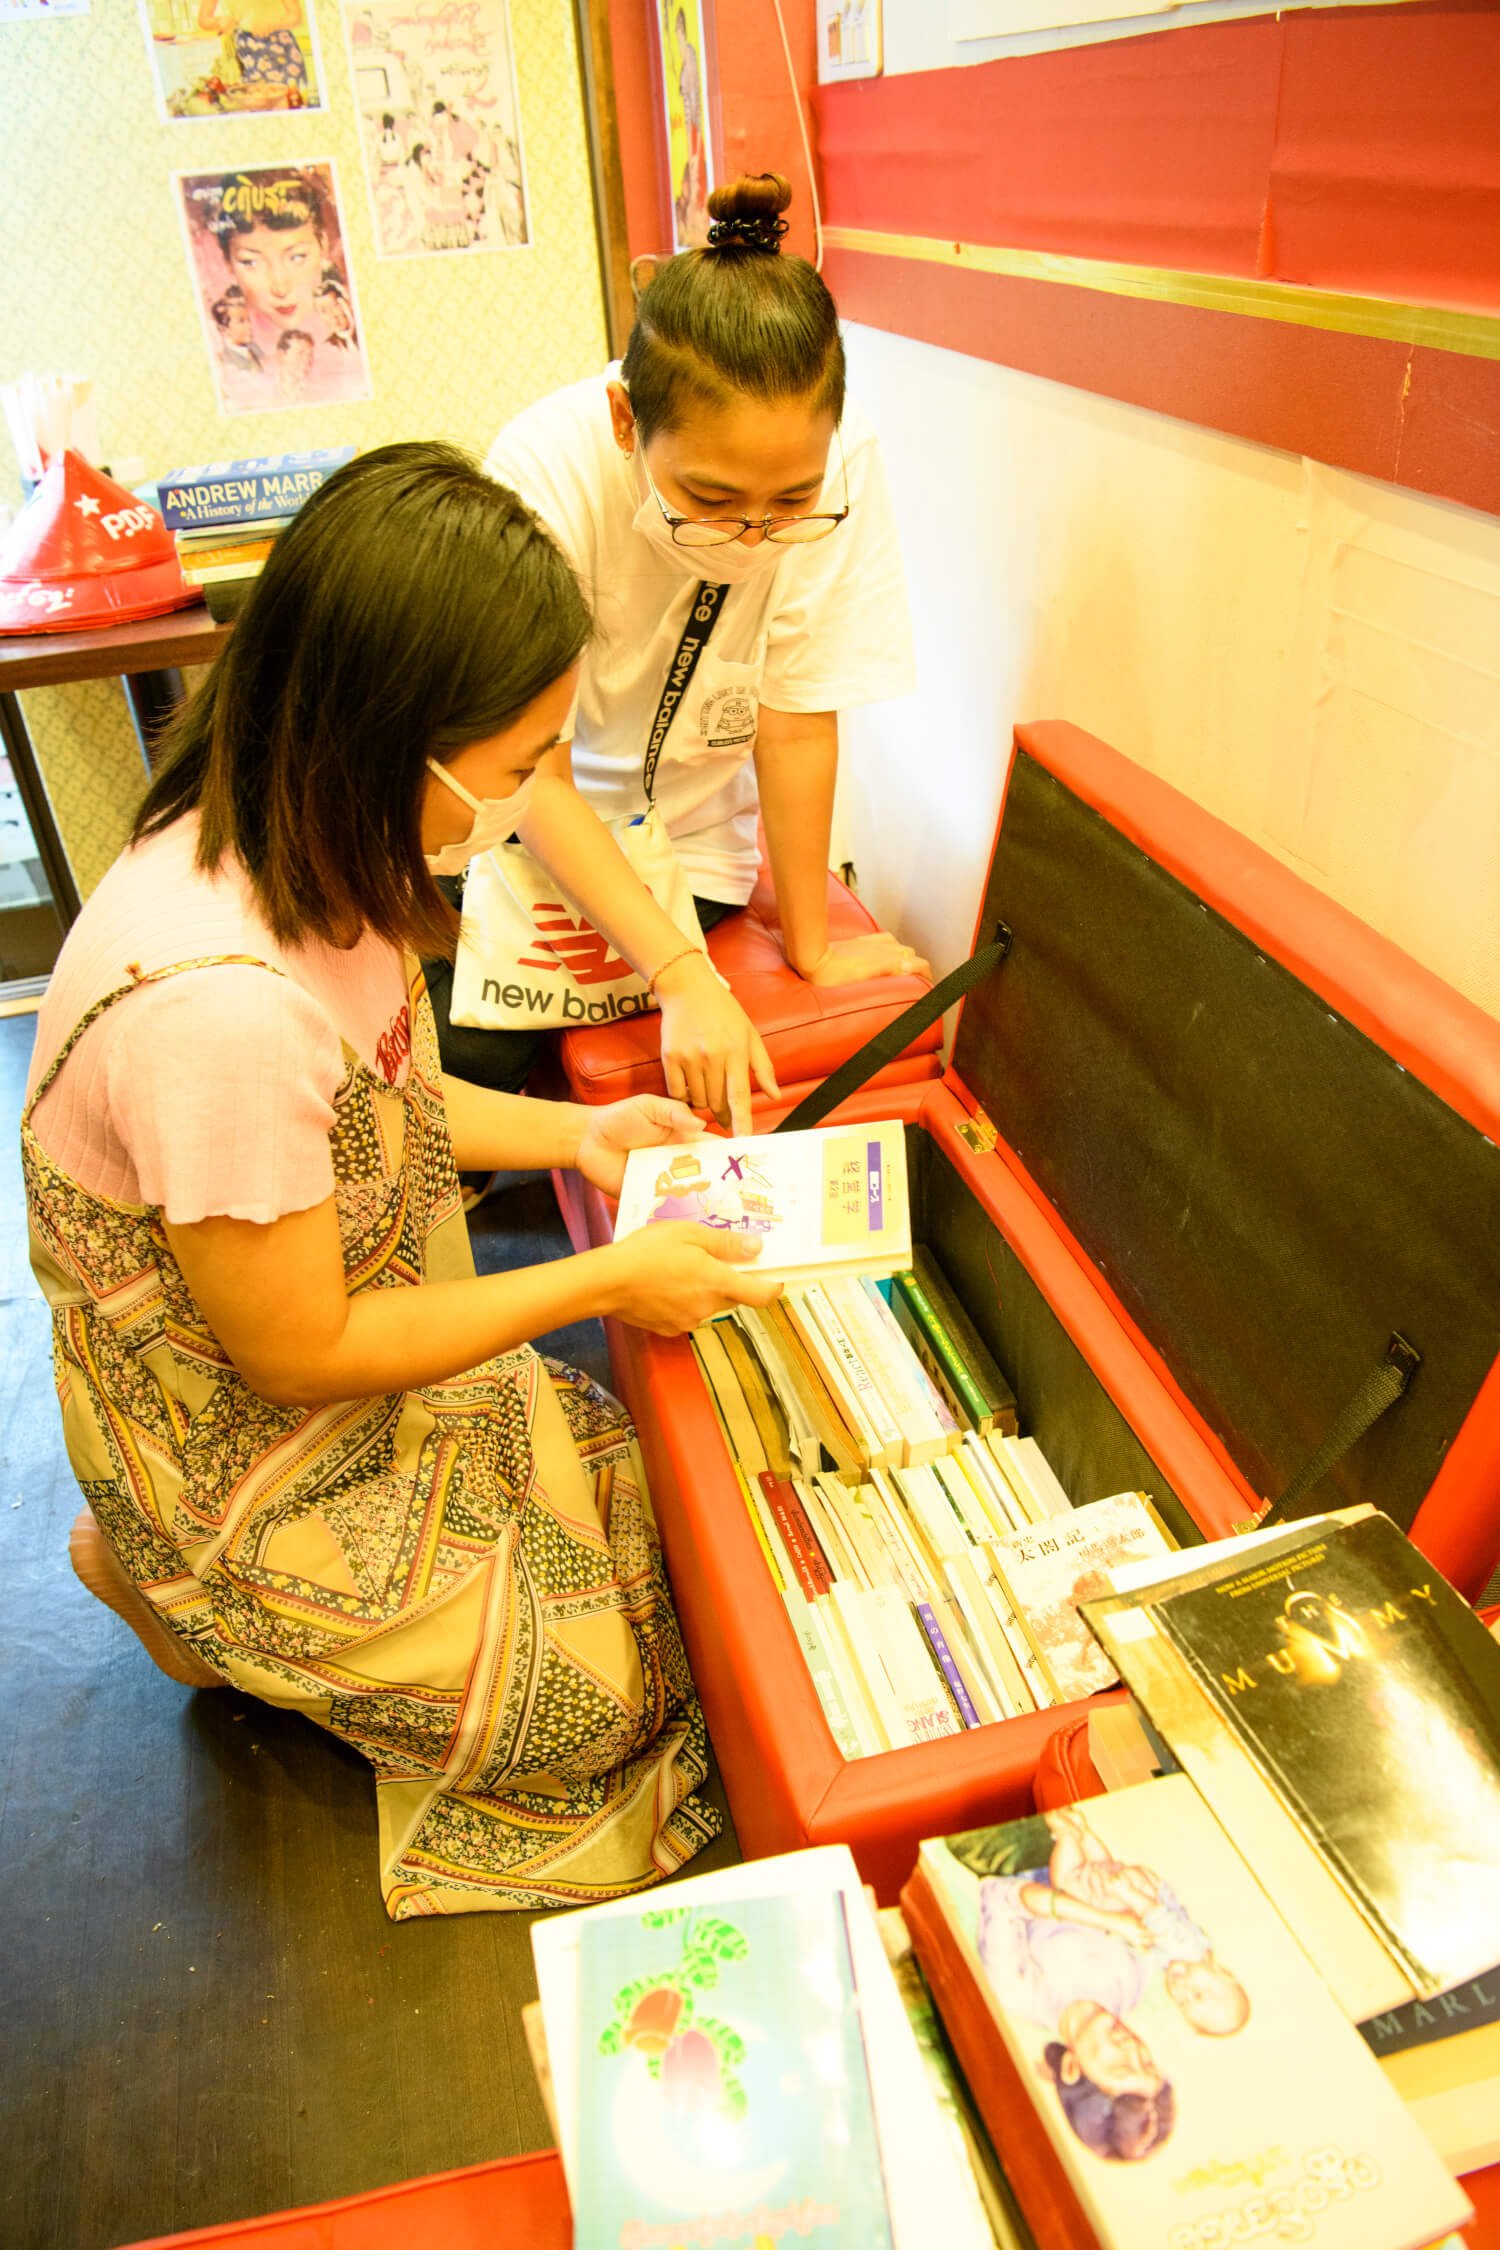 ブックフェアのために集まったのは日本語の学習帳やミャンマーの小説。ミャンマー人は活字好き。